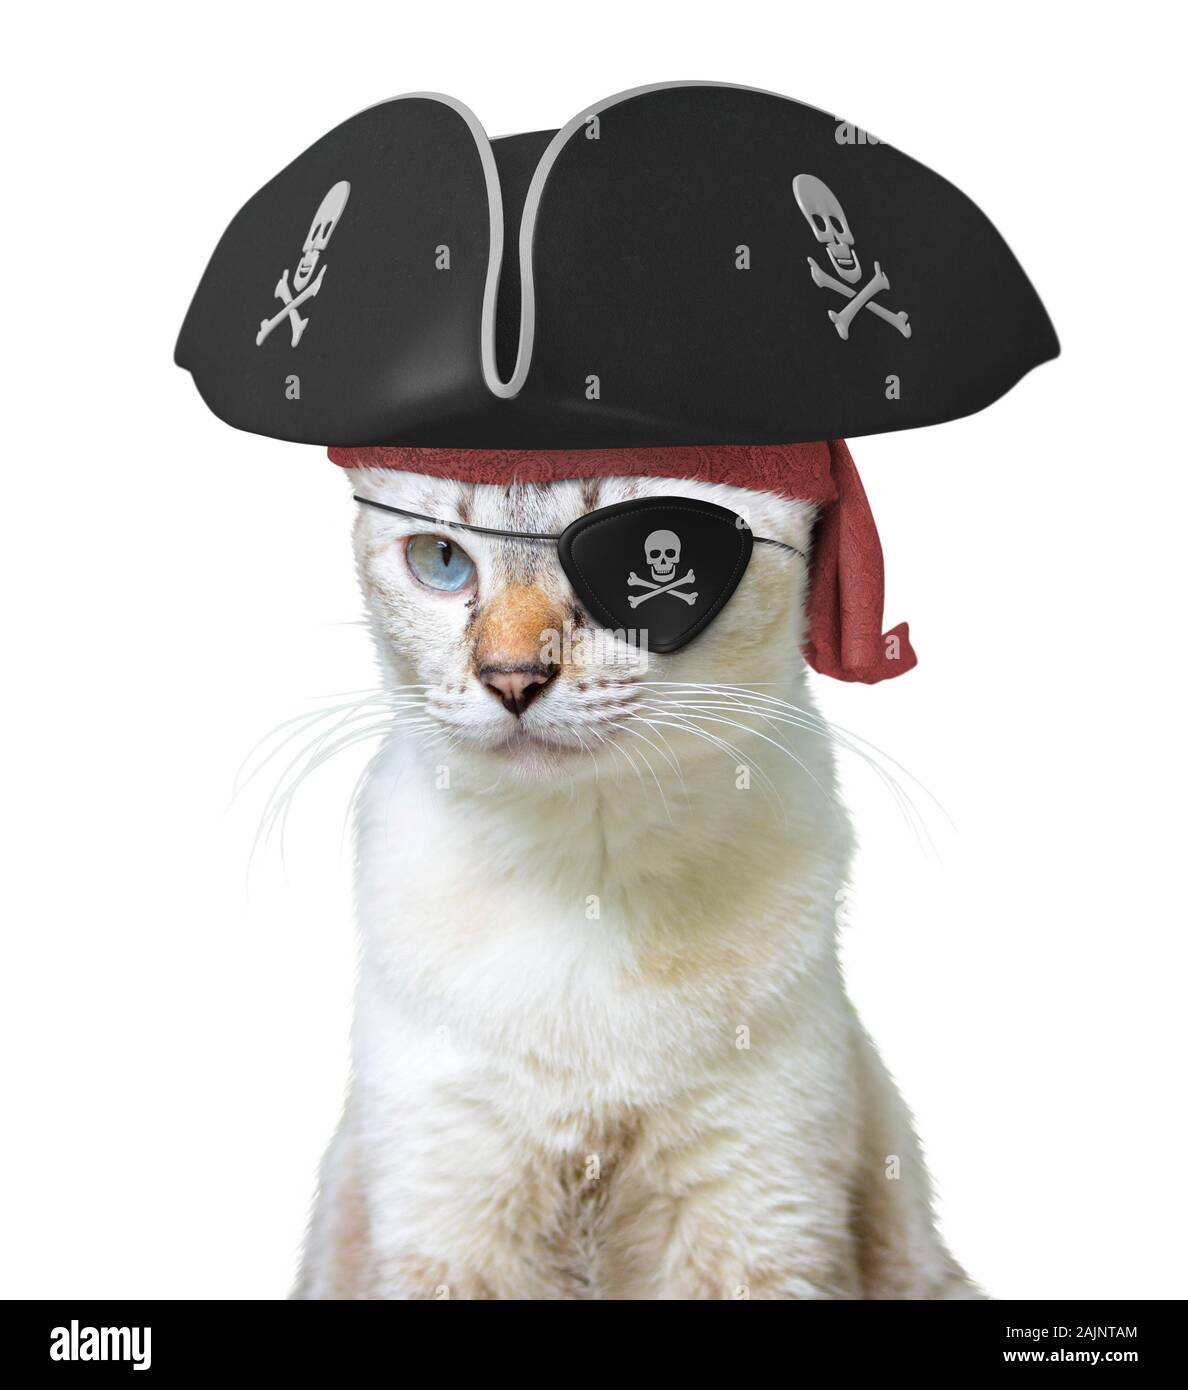 Lustige Tier kostüm einer Katze Pirat Kapitän trägt einen dreispitz Hut und  Augenklappe mit Totenköpfen und gekreuzten Knochen, auf weißem Hintergrund  Stockfotografie - Alamy